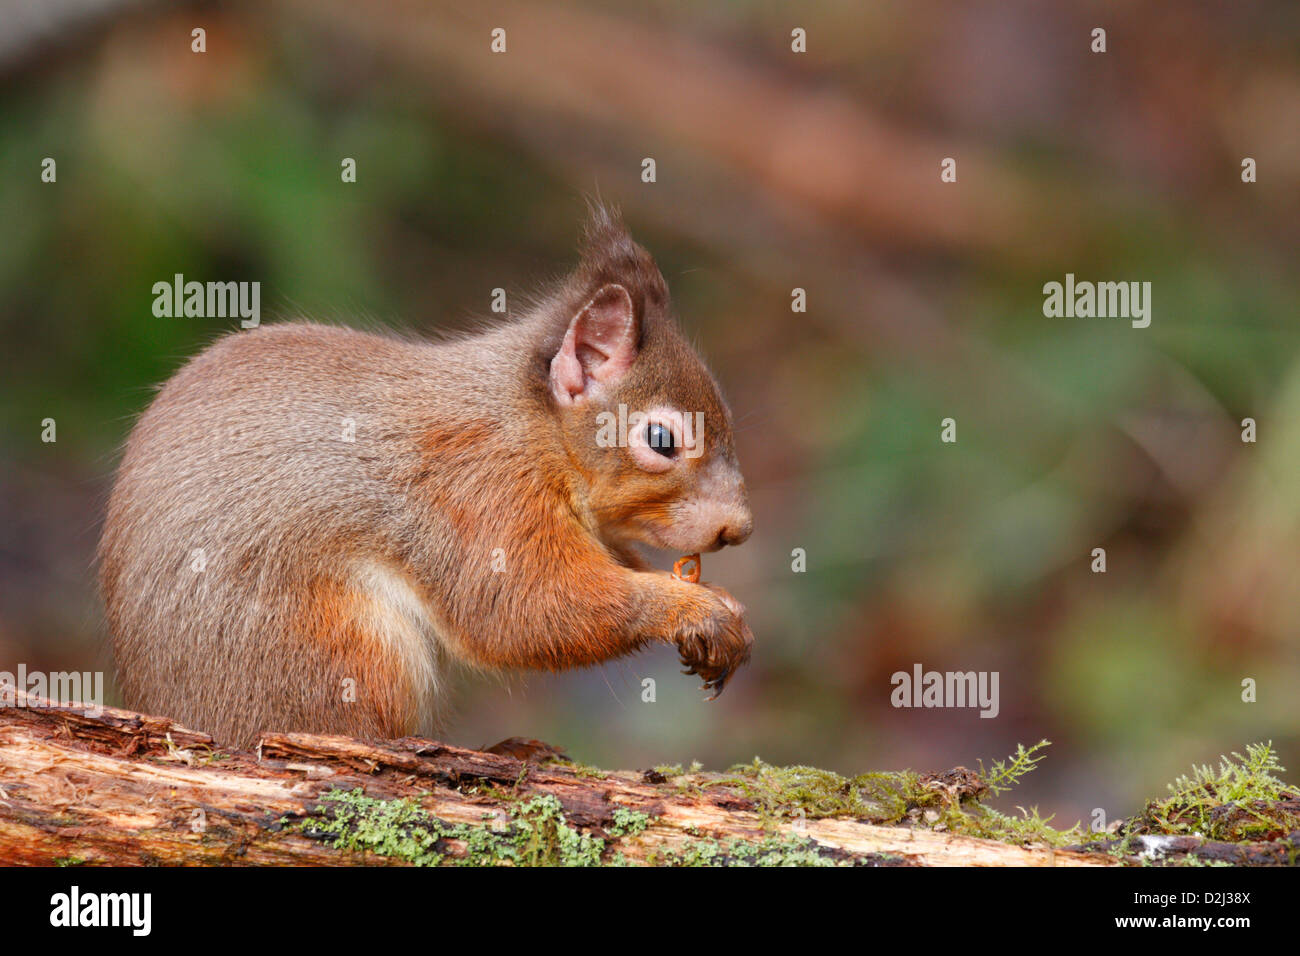 Red scoiattolo (Sciurus vulgaris) con un infetto, infiammazione degli occhi e bald patch sul suo naso, Highlands, Scotland, Regno Unito Foto Stock